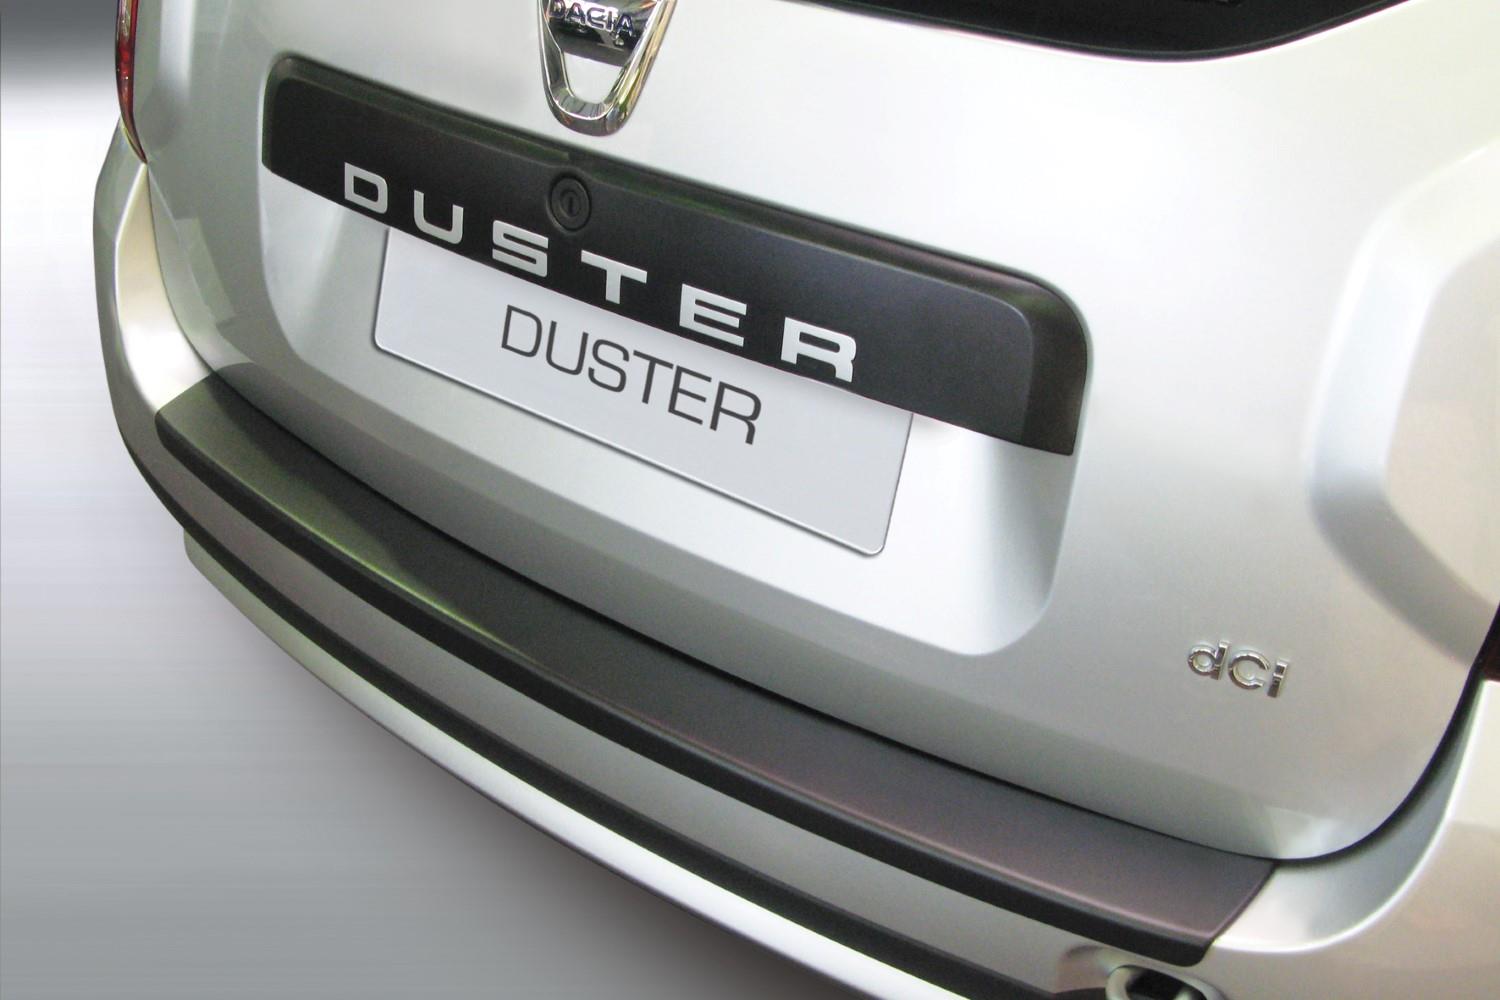 Bache protection coffre Dacia Duster 4 WD dal 2010- sur mesure